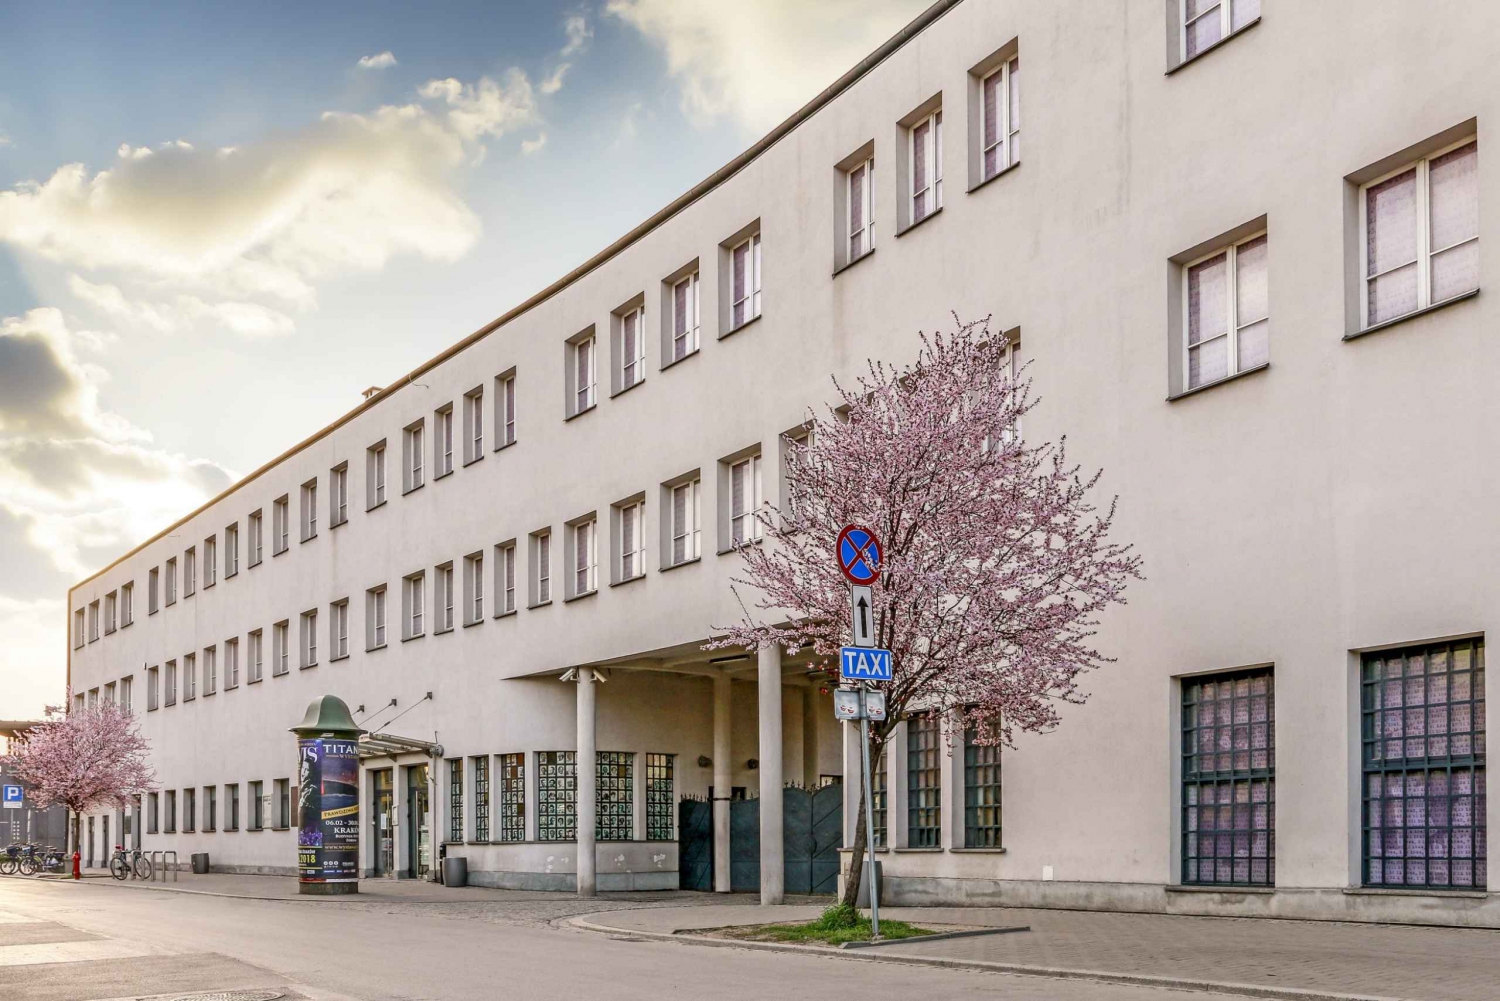 Krakau: Kazimierz, Schindlers Fabrik & Ghetto Führung